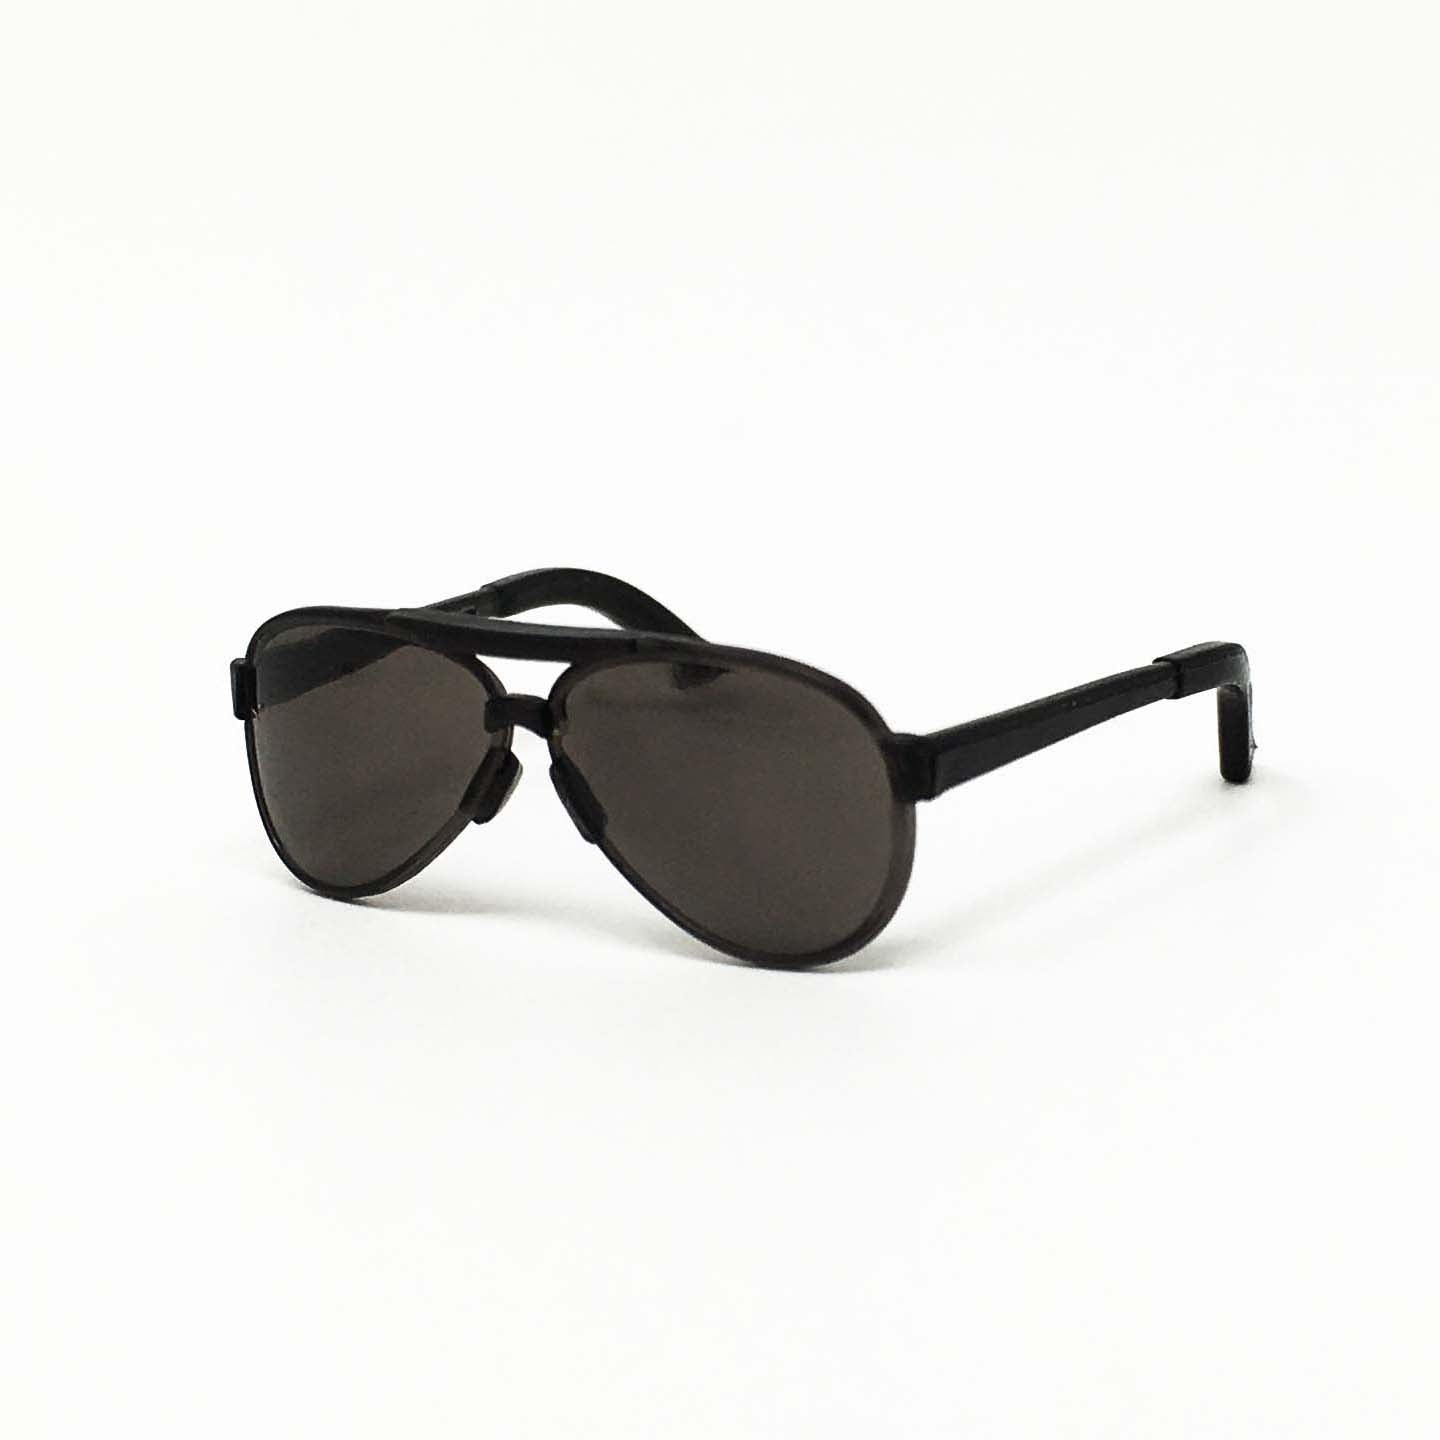 Teardrop Black Aviator Sunglasses - 1:6 Scale